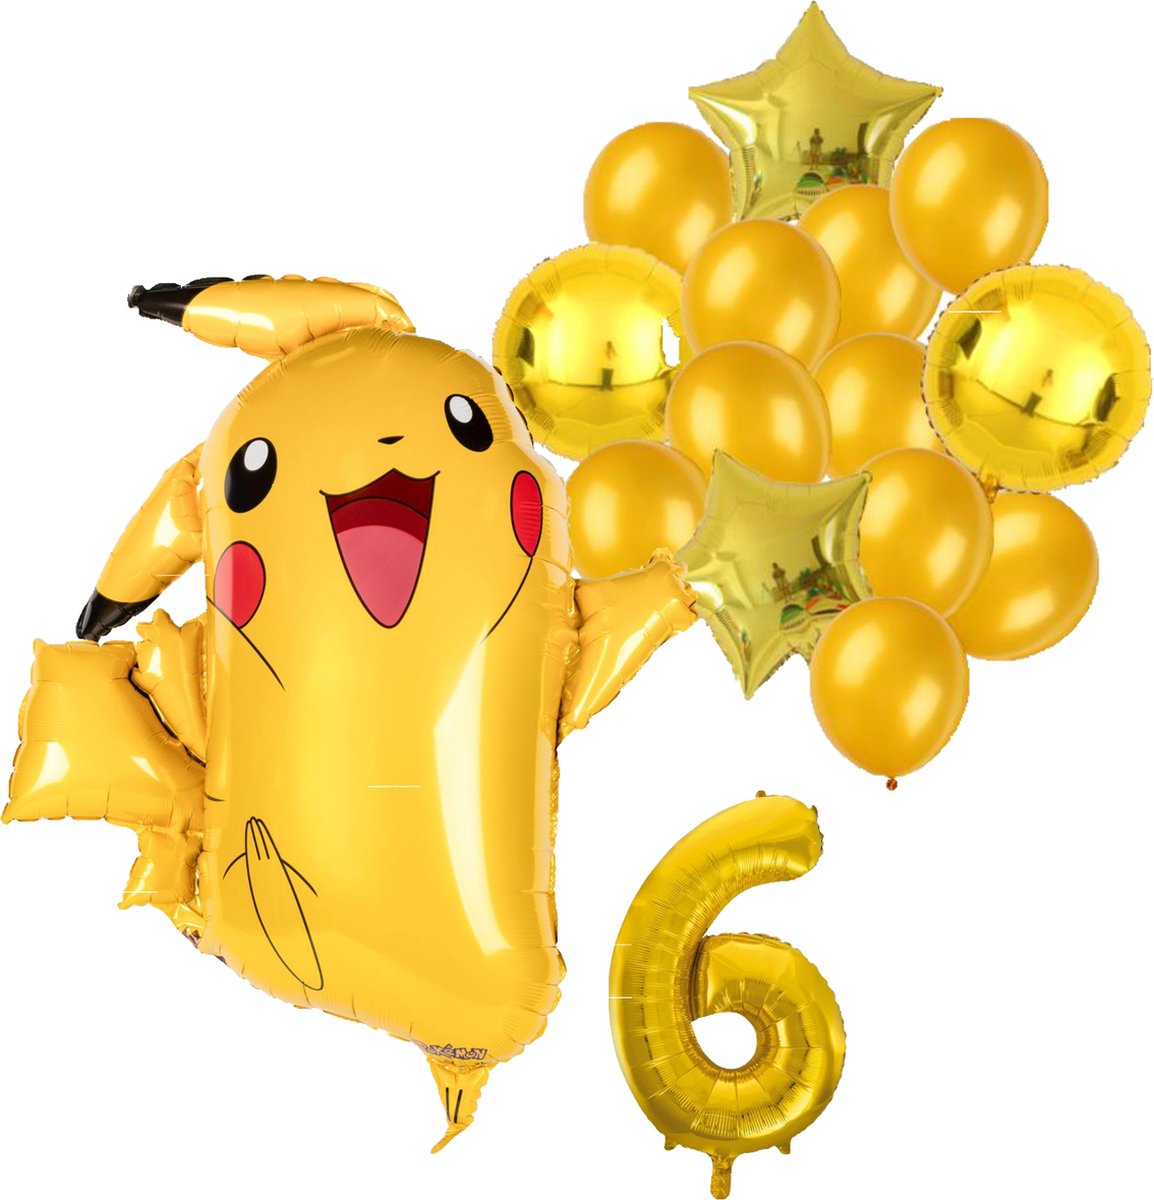 Pokemon ballon set - 62x78cm - Folie Ballon - Pokemon - Pikachu - Themafeest - Verjaardag - Ballonnen - Versiering - Helium ballon